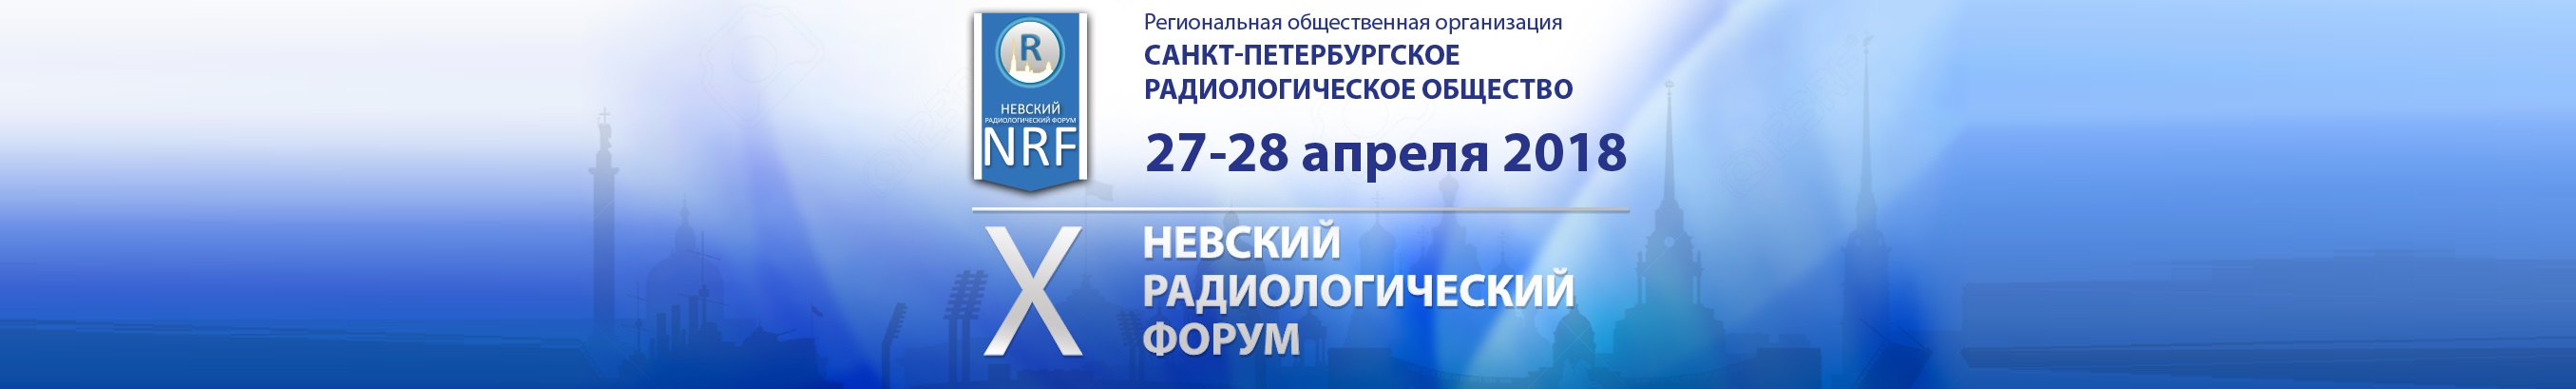 Общественные организации санкт петербурга. Логотип х Невского международного конгресса.